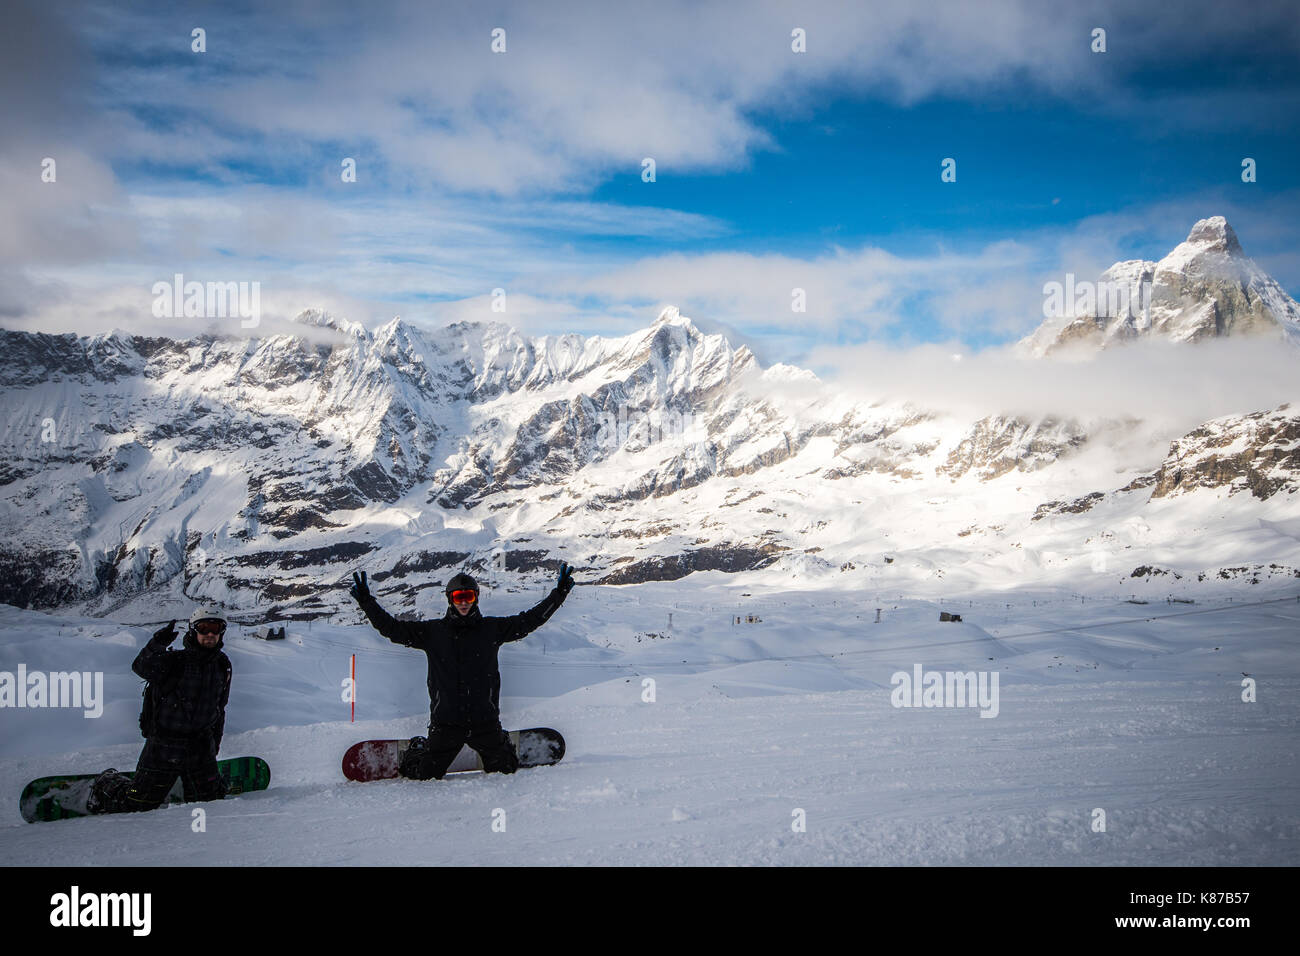 Two snowboarders cheering overlooking the iconic Matterhorn peak, taken in Zermatt, Switzerland Stock Photo